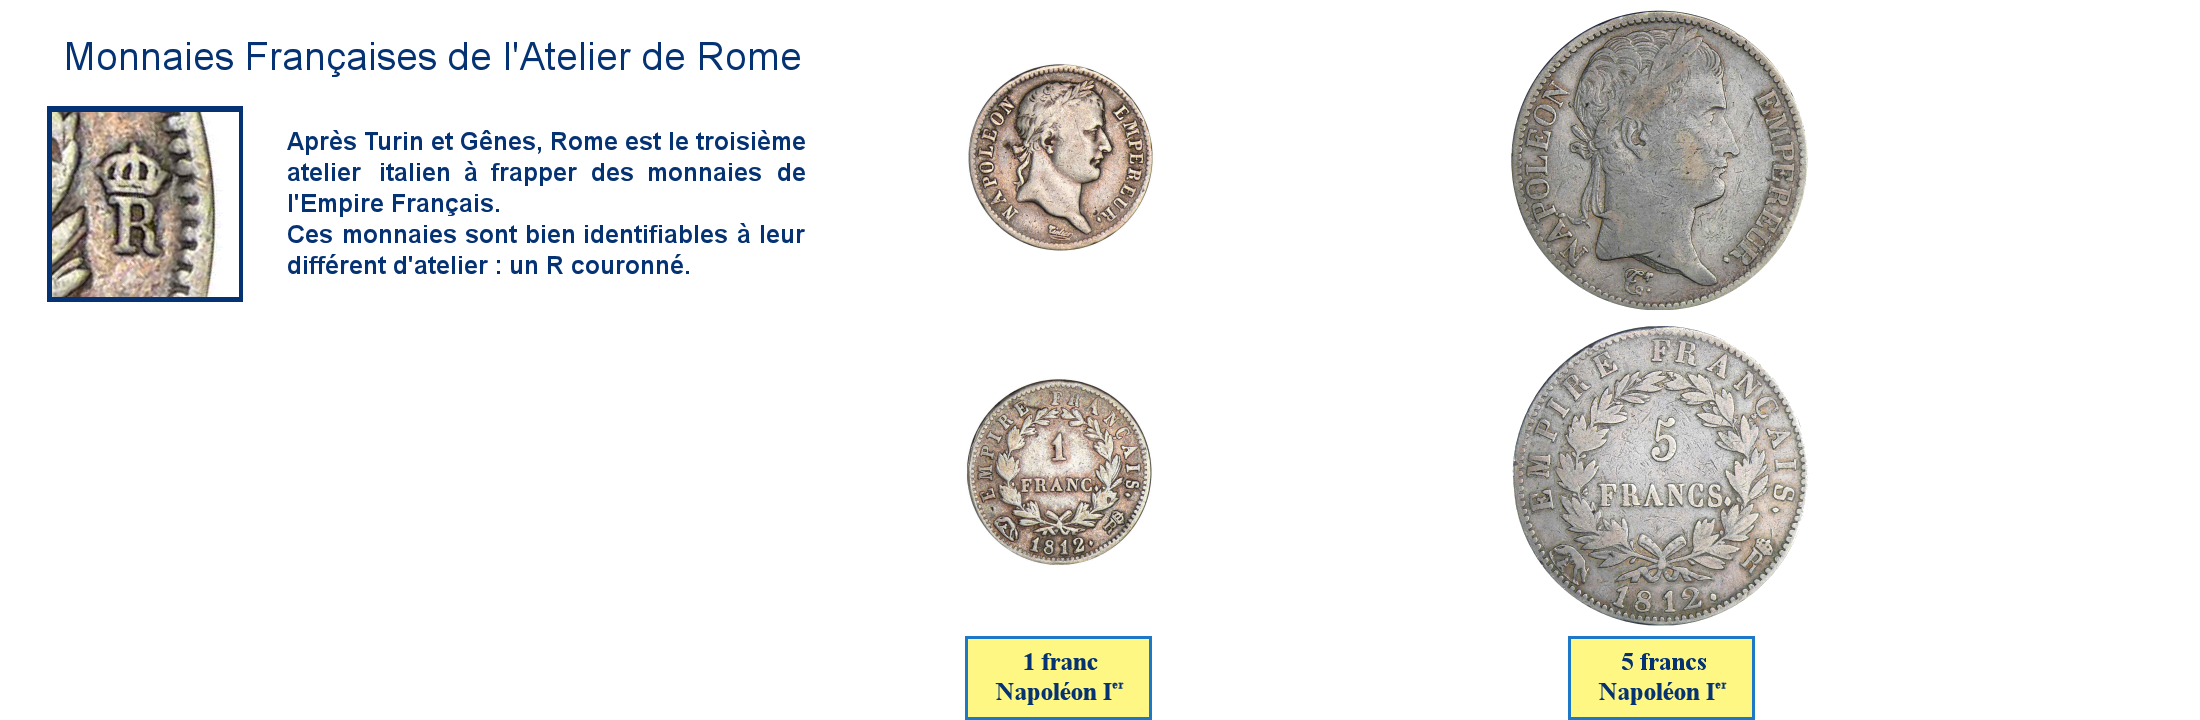 Photos de pièces de monnaies de Napoléon, frappées à Rome